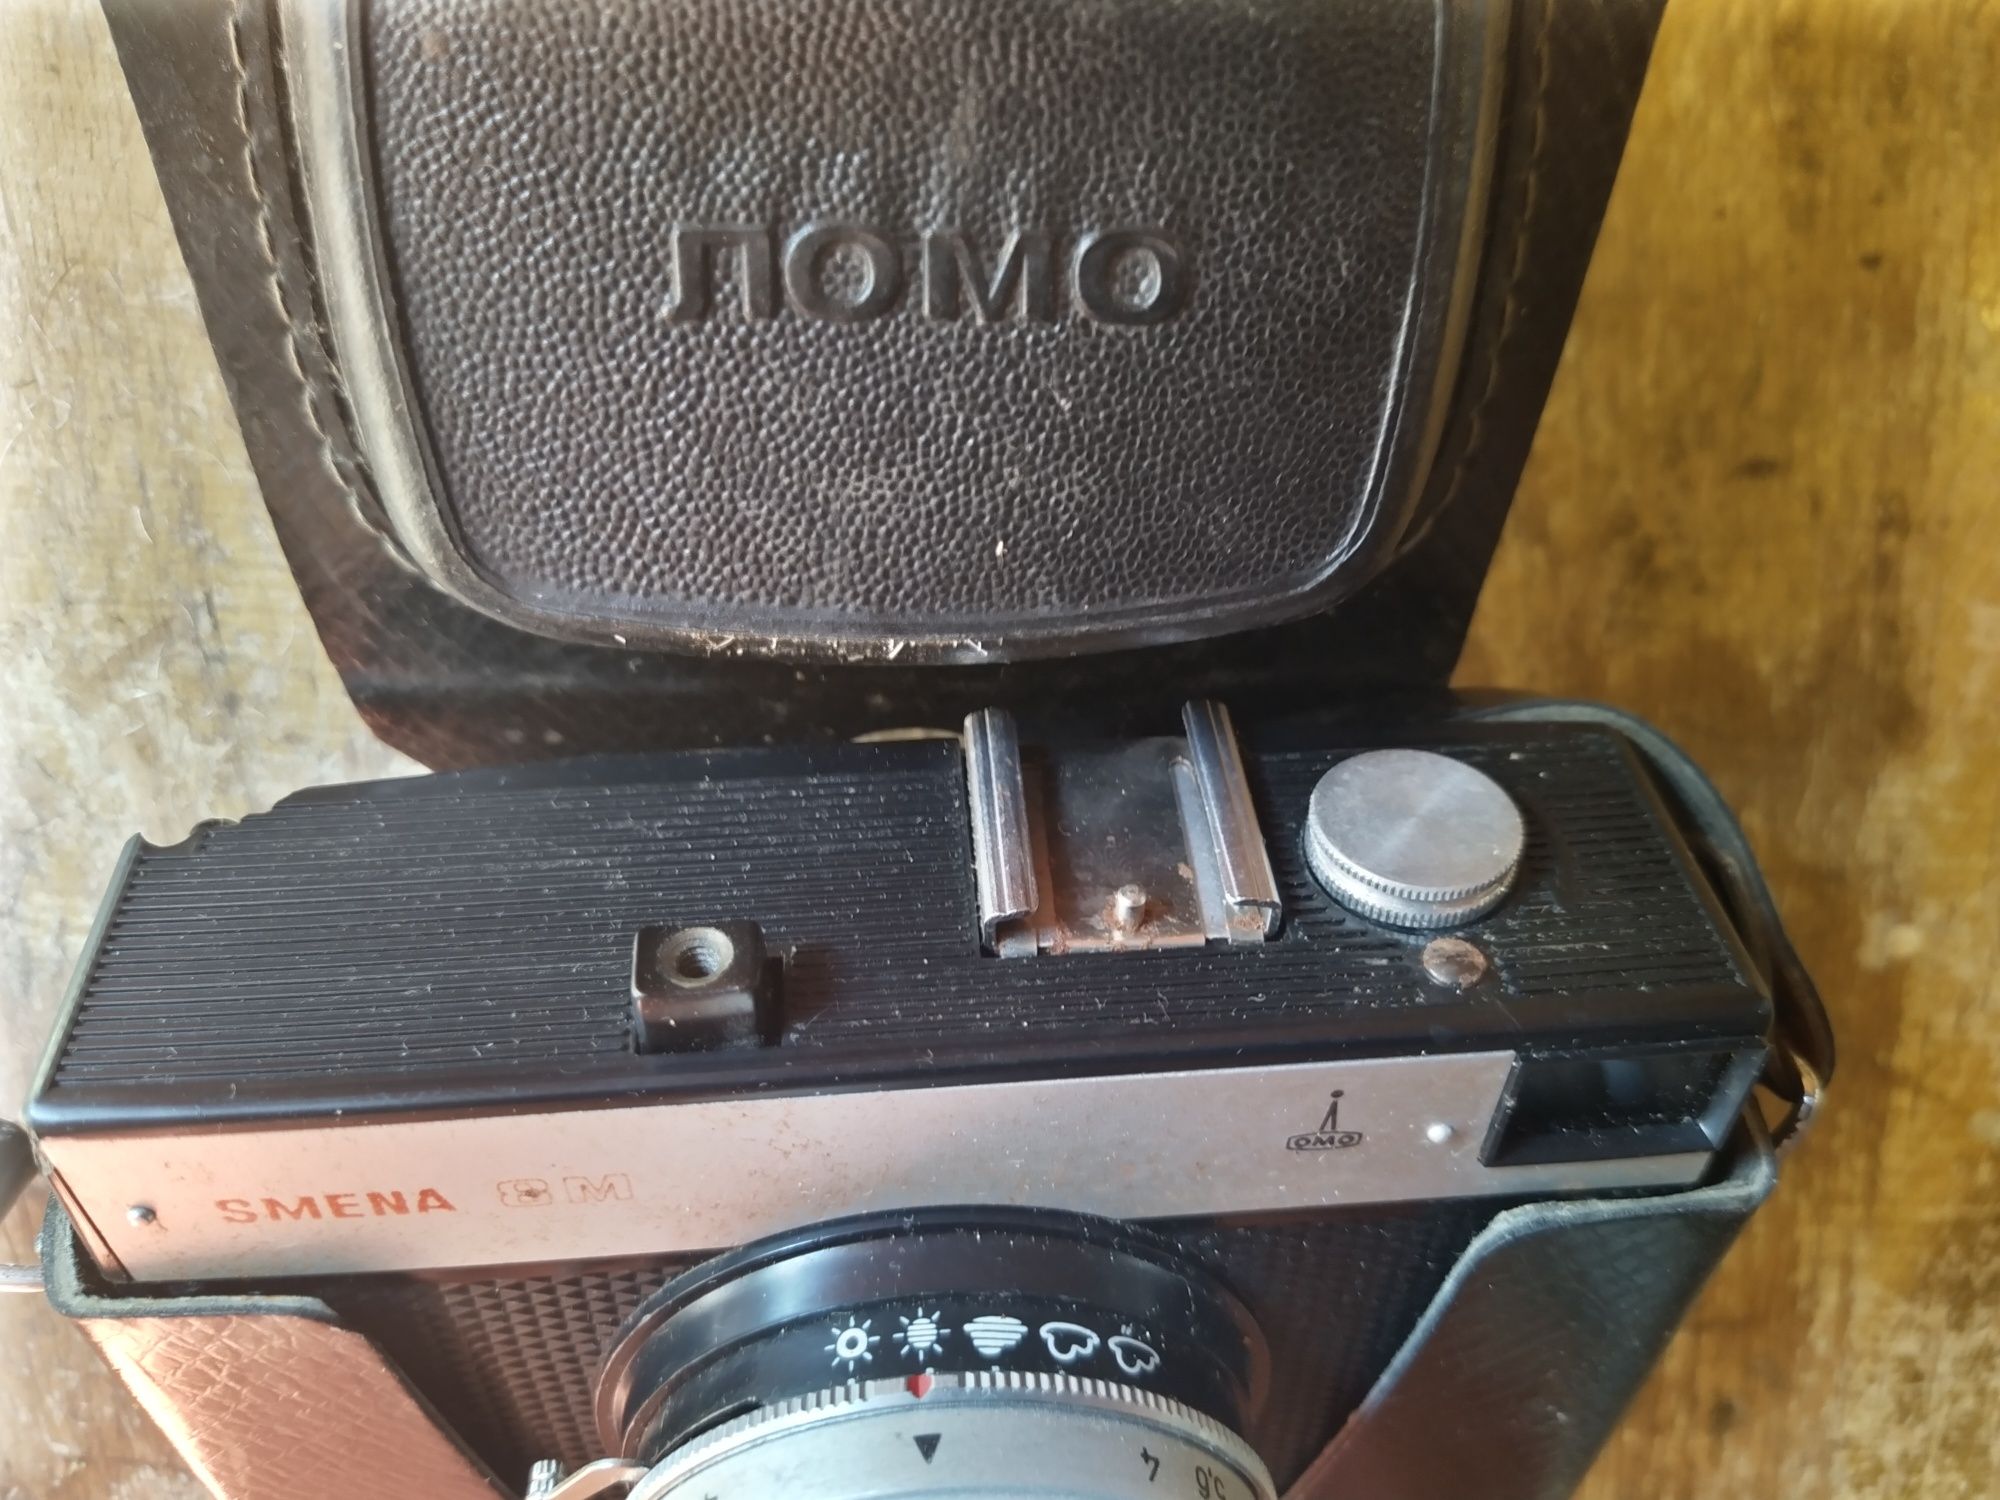 Стари фотоапарати Смяна 8, Зорки и Церто